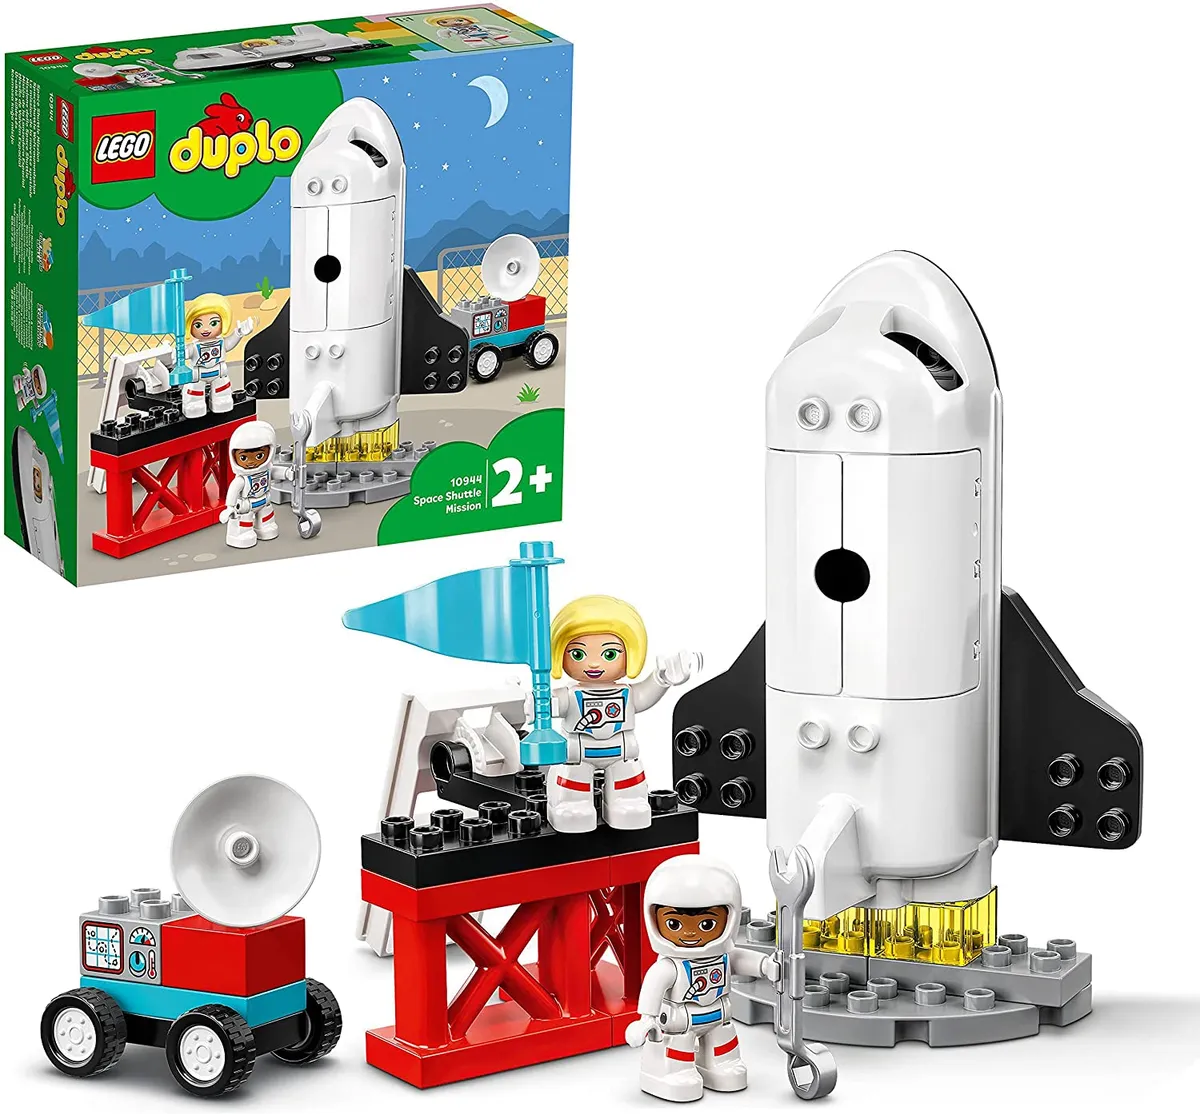 Lego Duplo Rocket Set